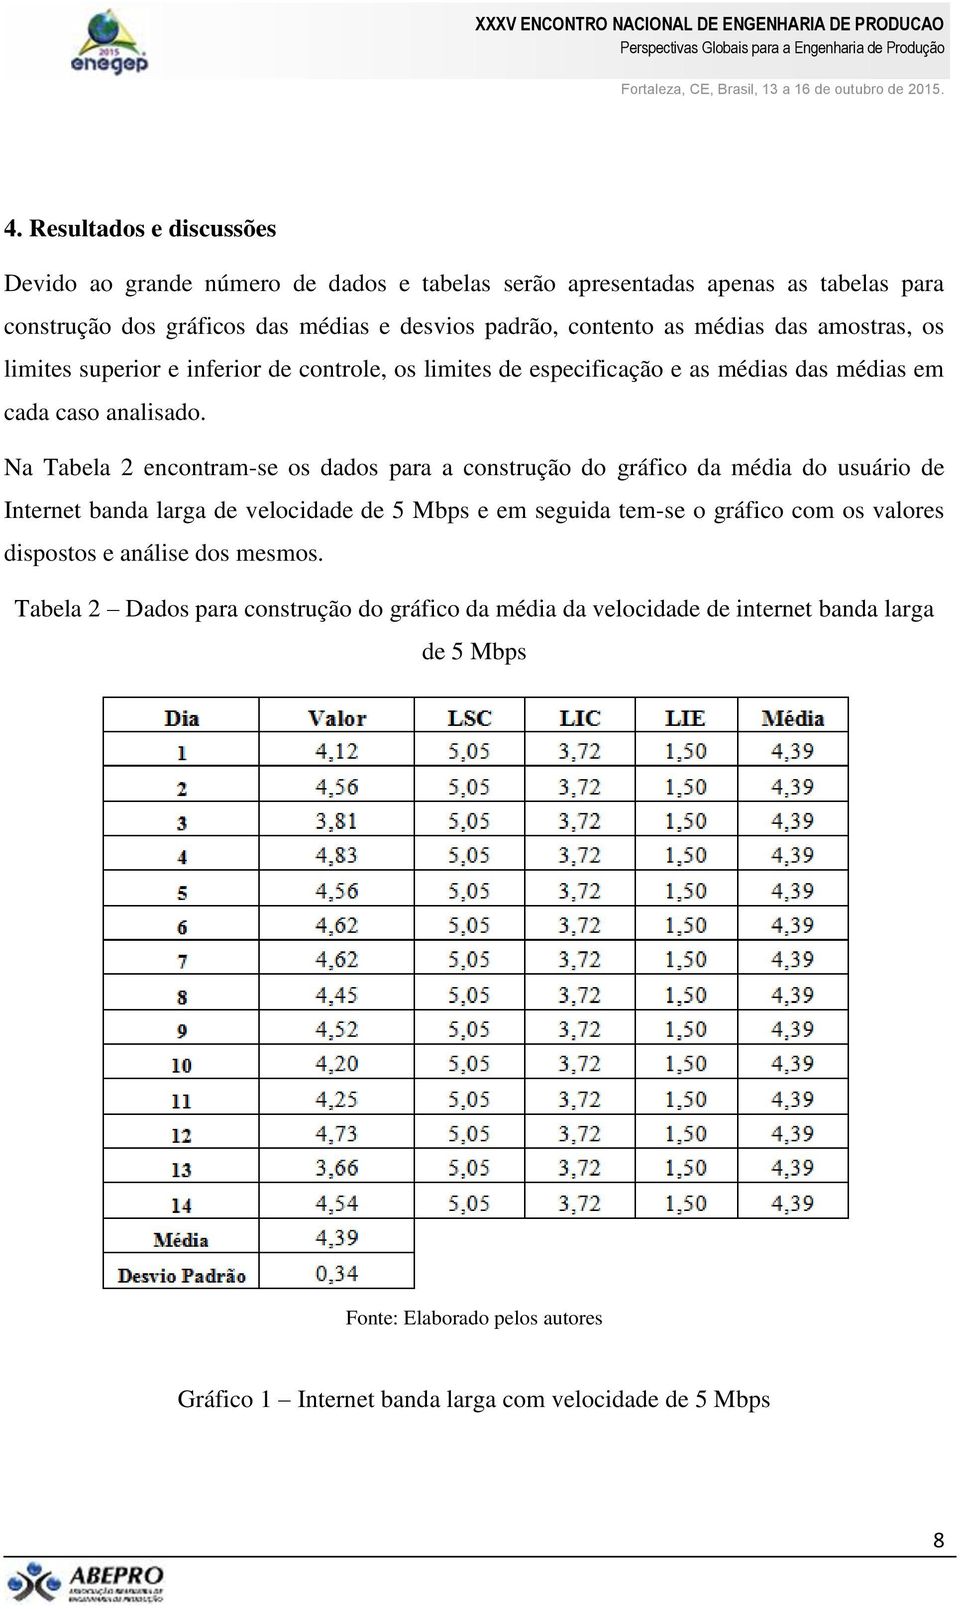 Na Tabela 2 encontram-se os dados para a construção do gráfico da média do usuário de Internet banda larga de velocidade de 5 Mbps e em seguida tem-se o gráfico com os